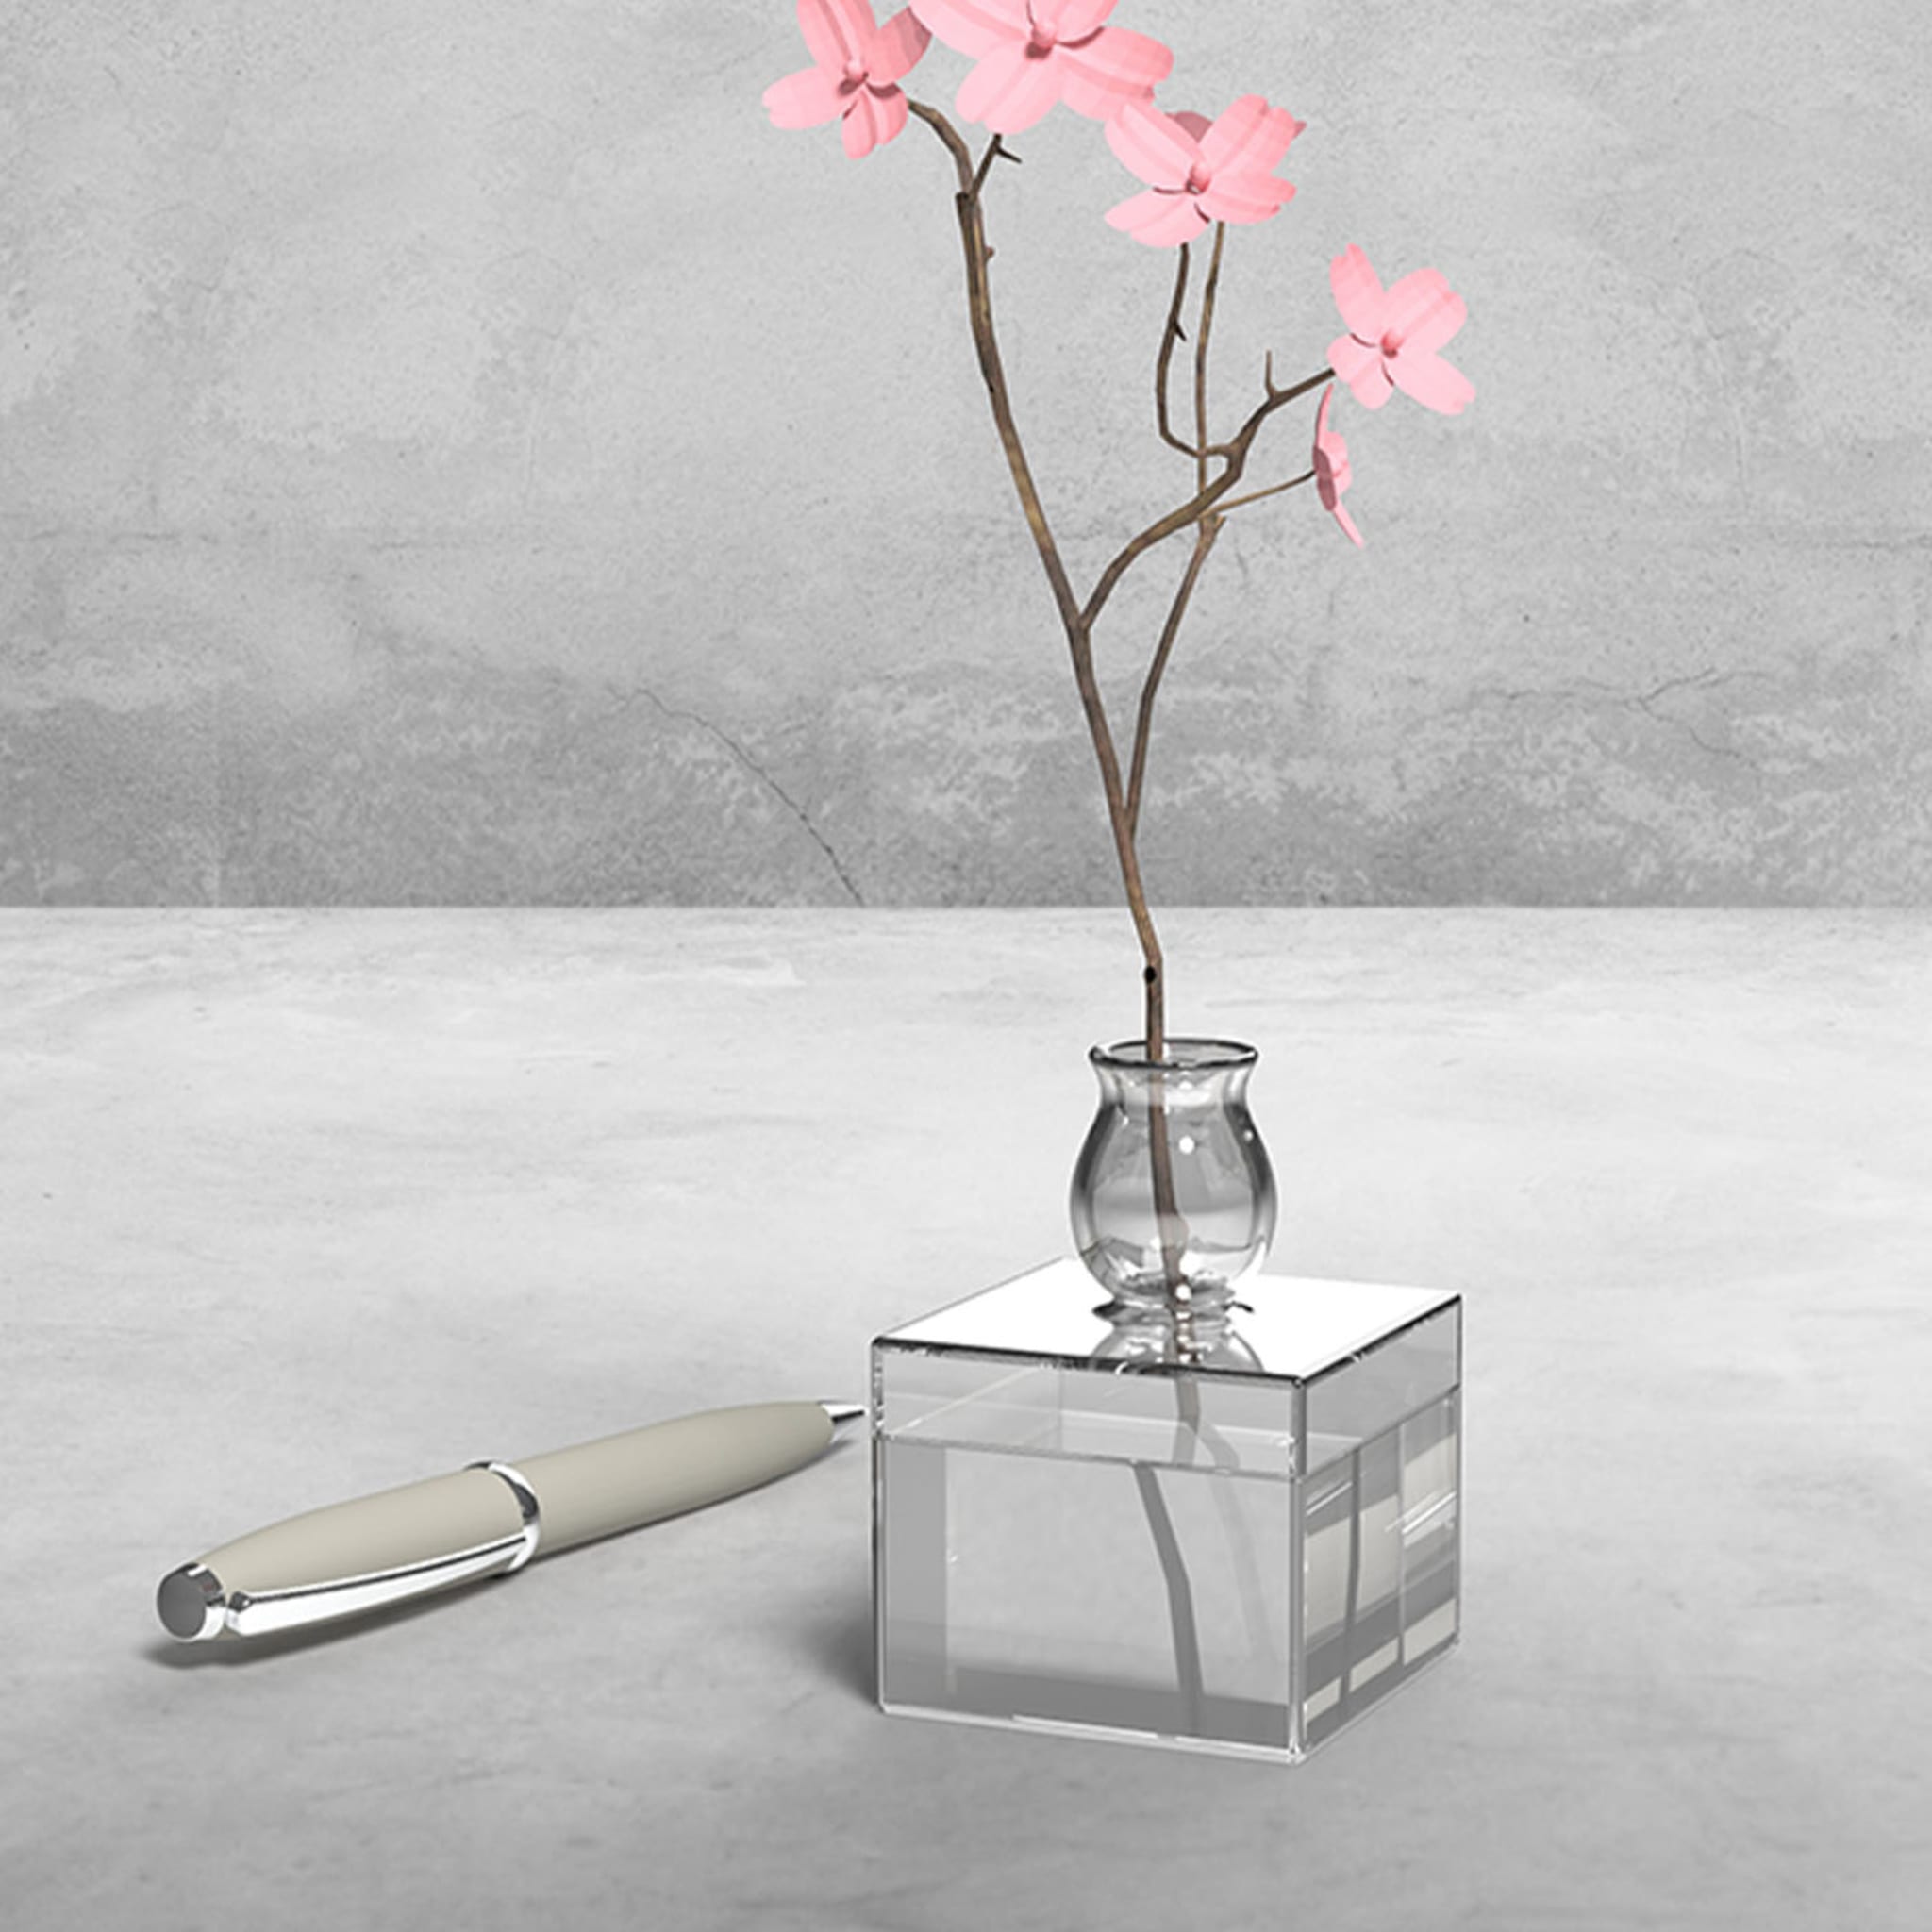 Milo Square-Based Transparent Vase by Quaglio Simonelli - Alternative view 2